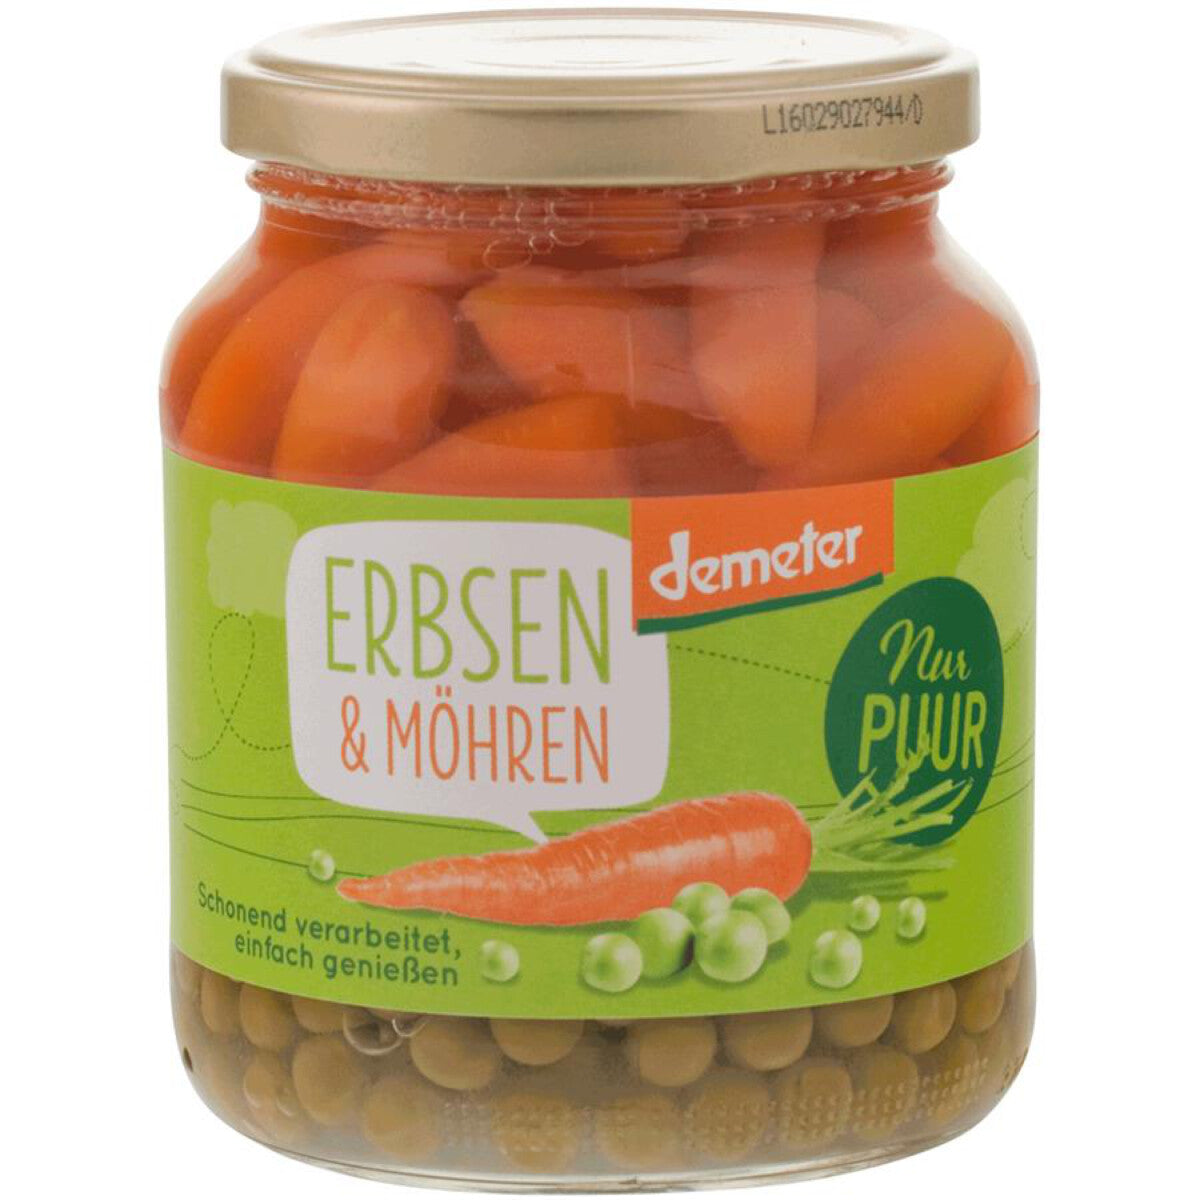 NUR PUUR Erbsen & Möhren - 350 g